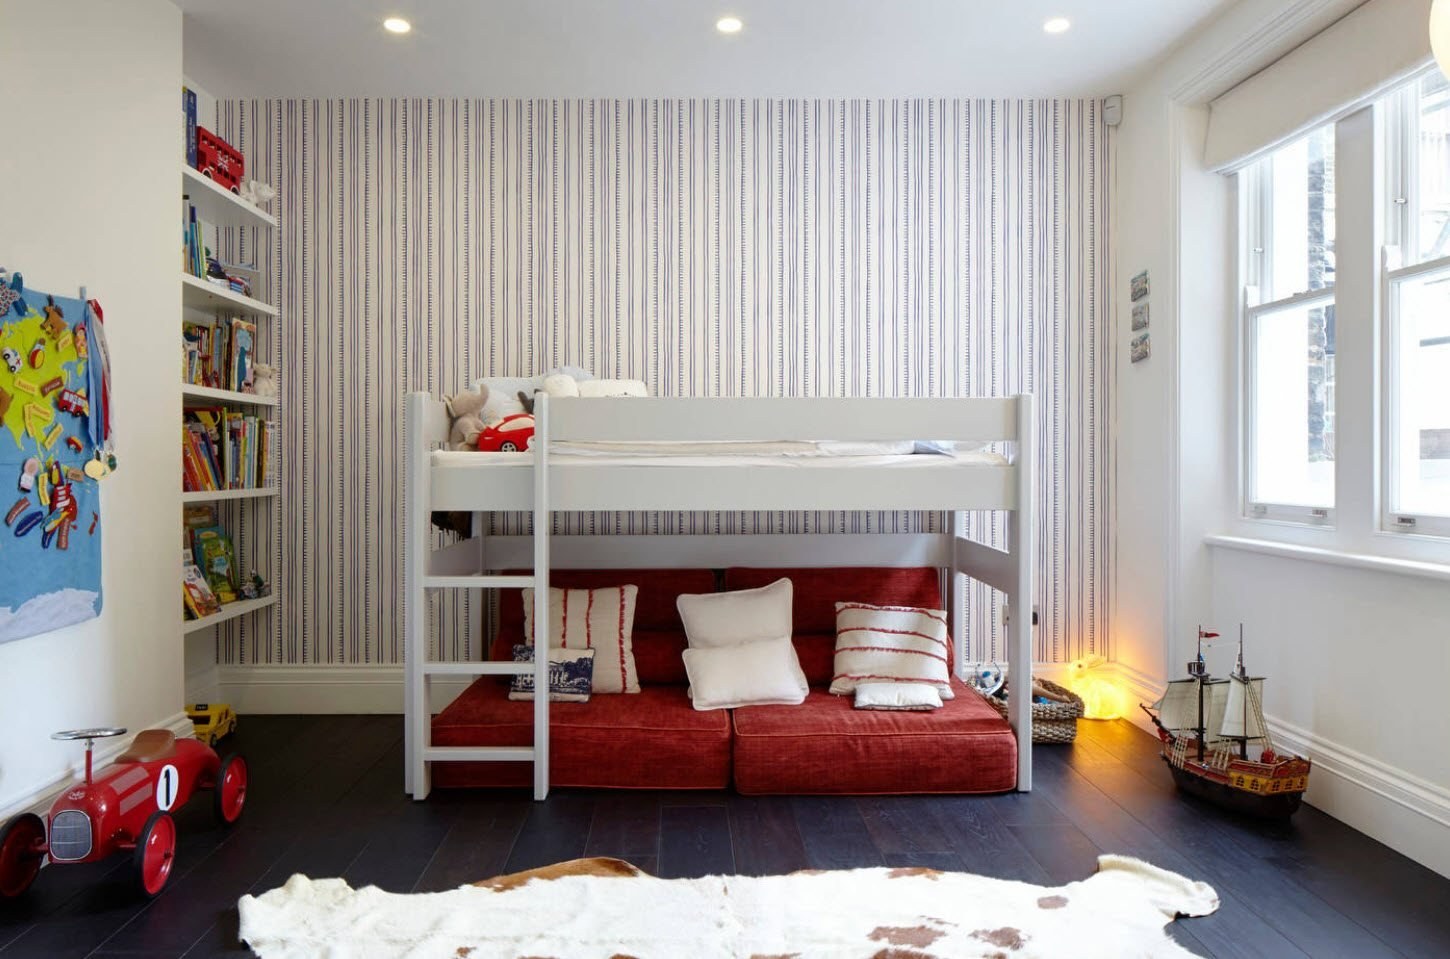 Интерьер детской с двухэтажной кроватью